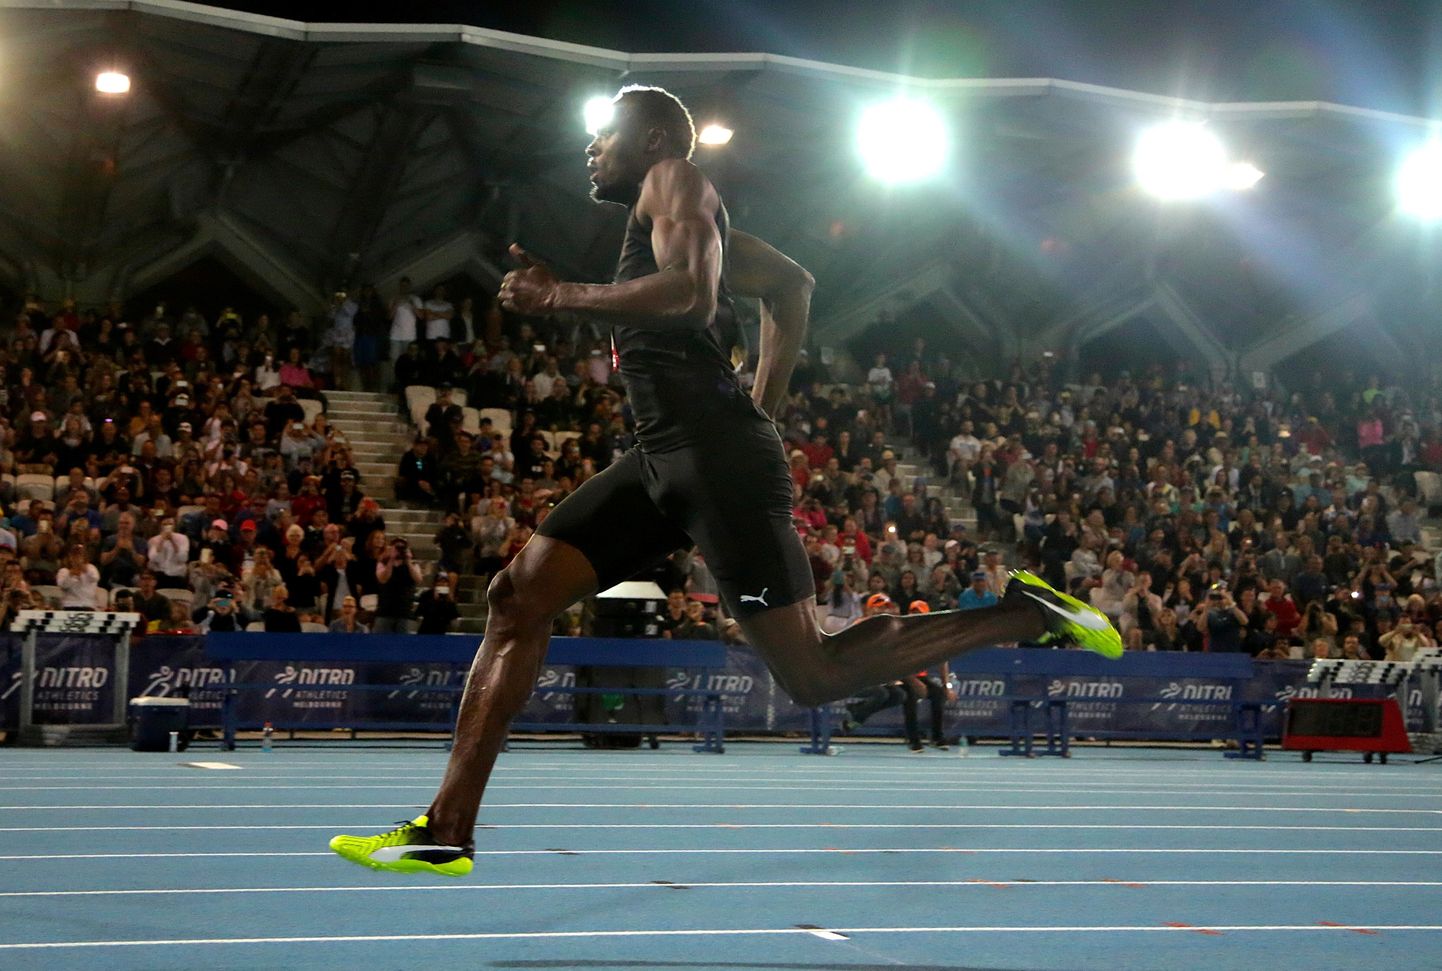 Aasta meessportlase auhinna võitnud Usain Bolt.